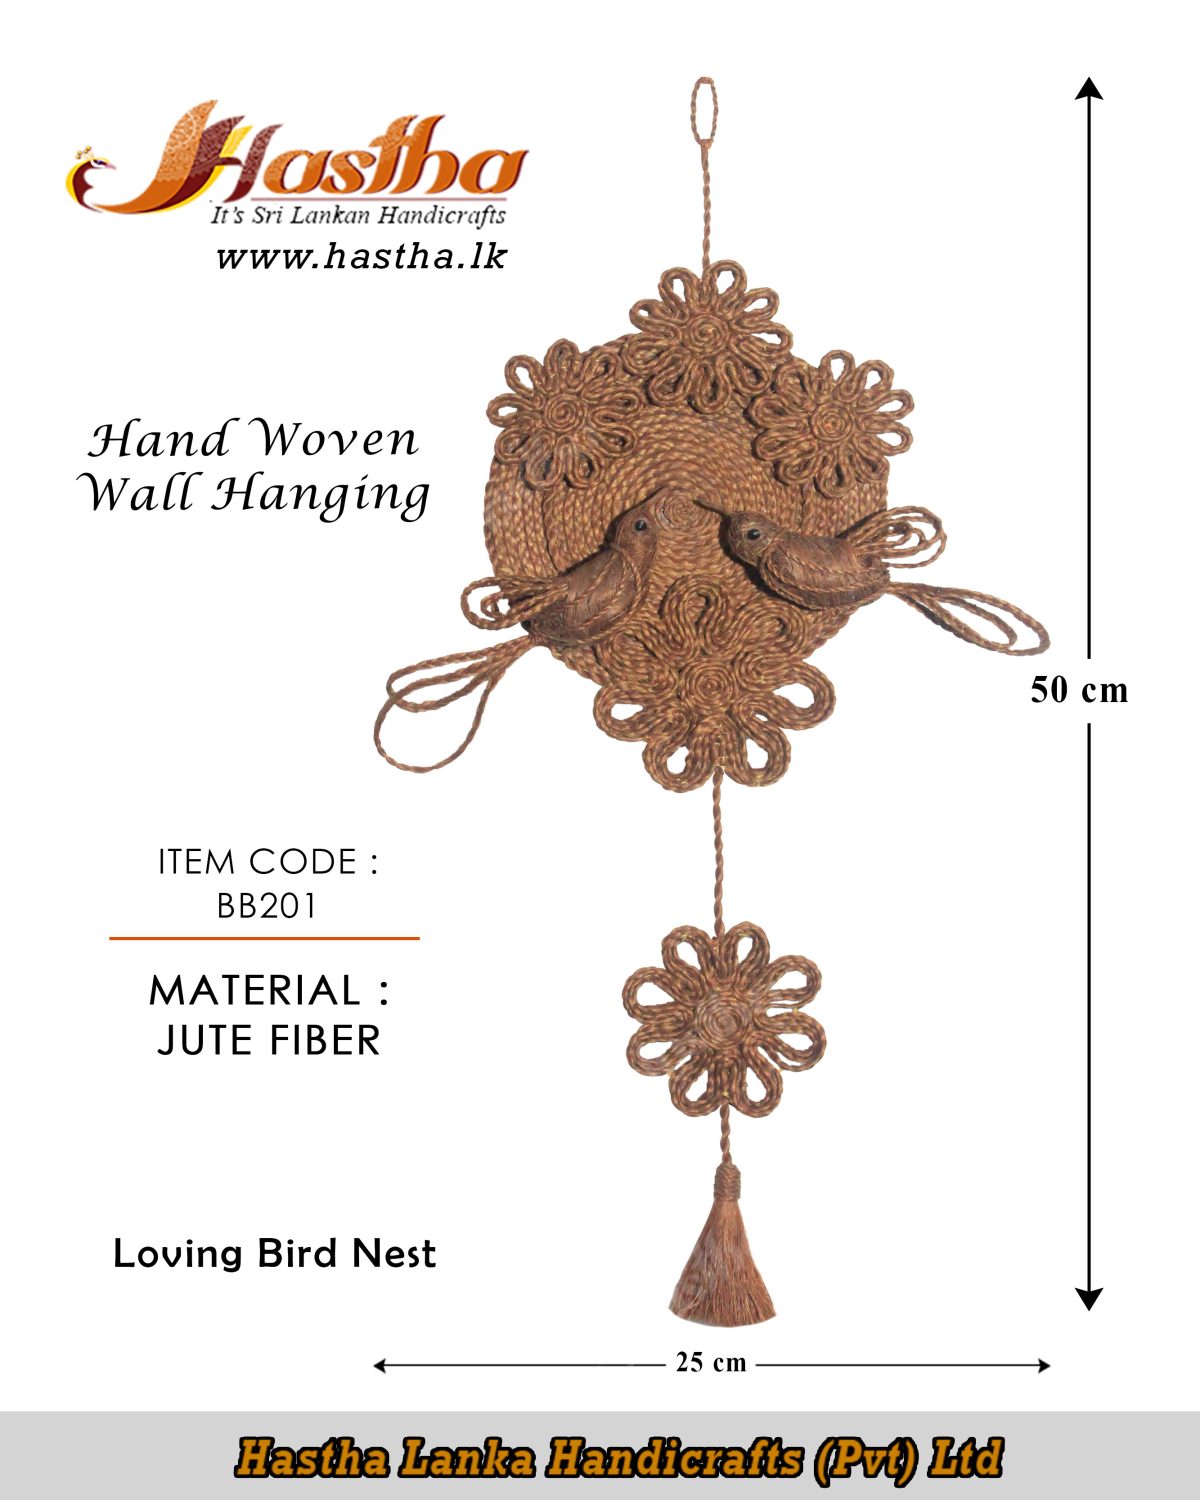 loving_bird_nest_hand_woven_wall_hanging_jute_fiber